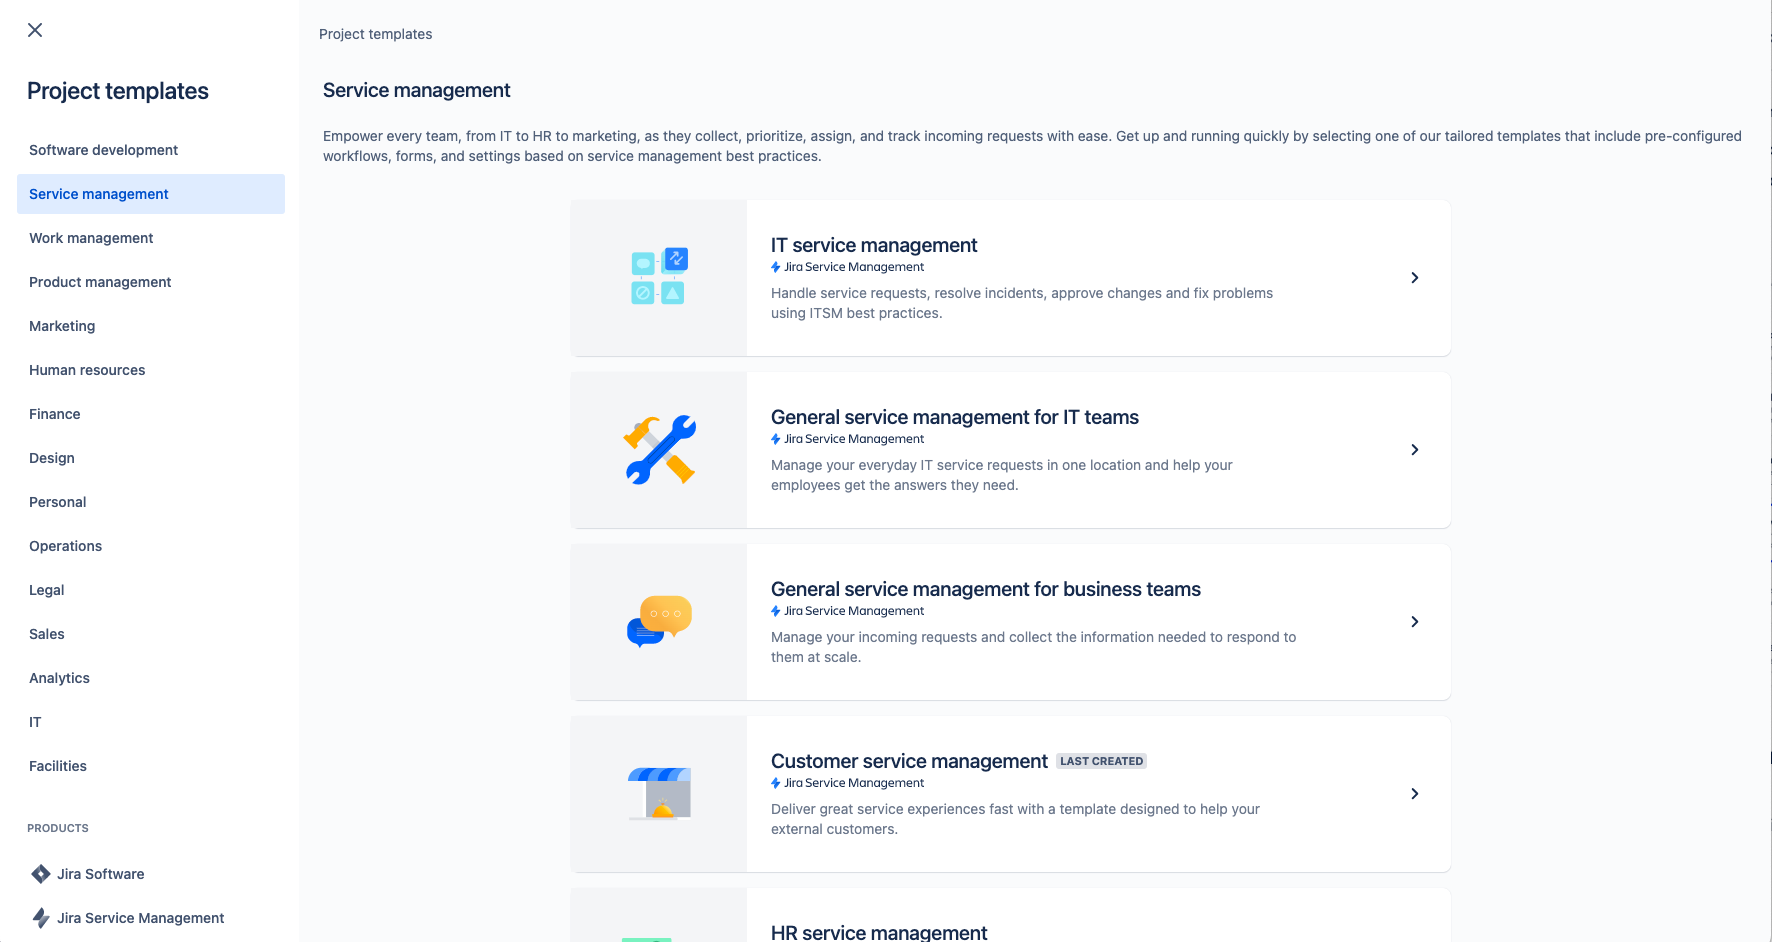 schermafbeelding van het sjabloon voor klantenservicebeheer-projecten